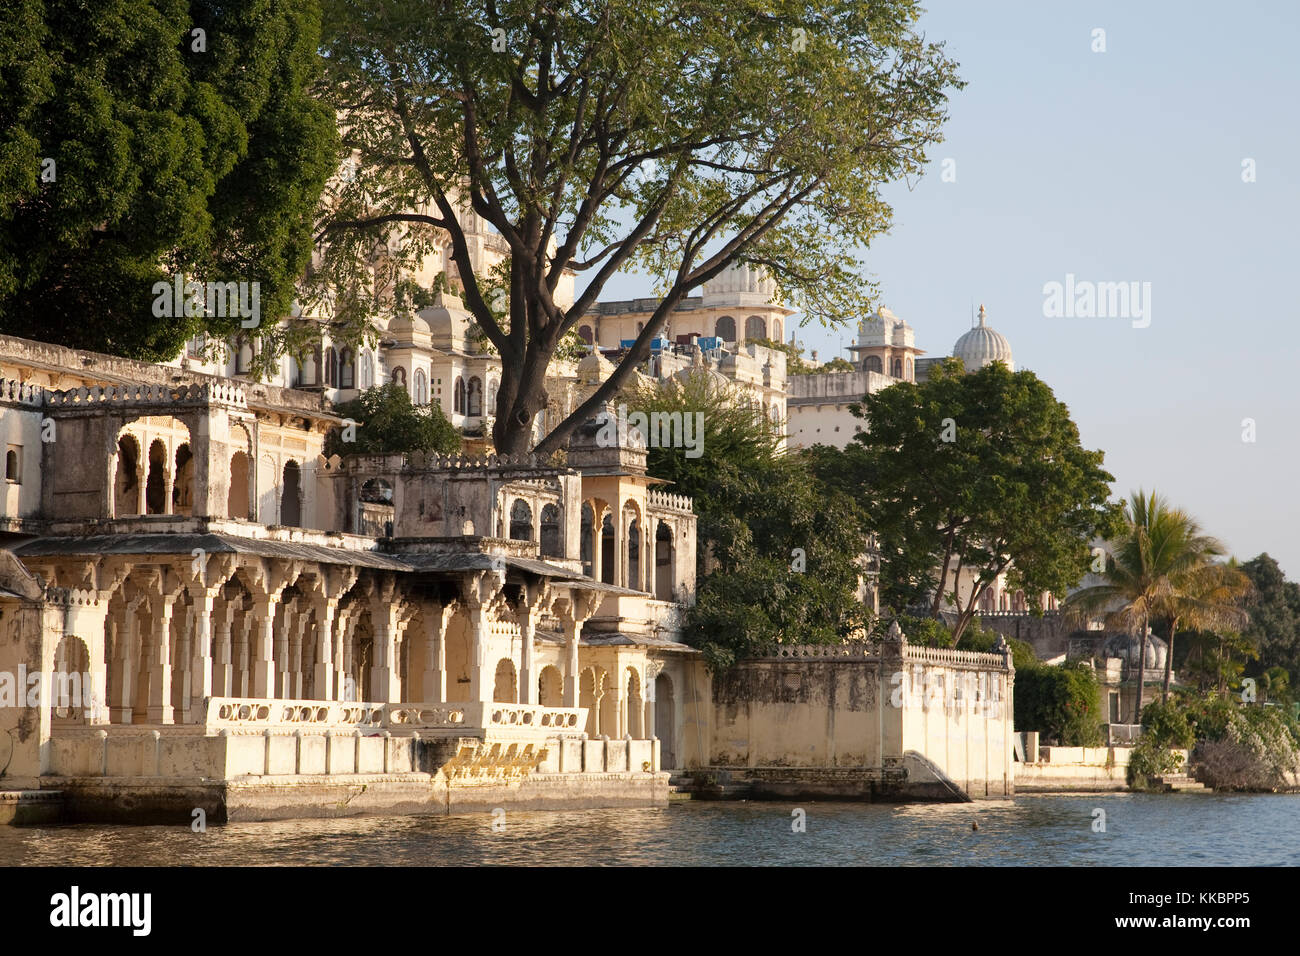 Dettagli architettonici del palazzo di città visto dal Lago Pichola, Udaipur, Rajasthan Foto Stock